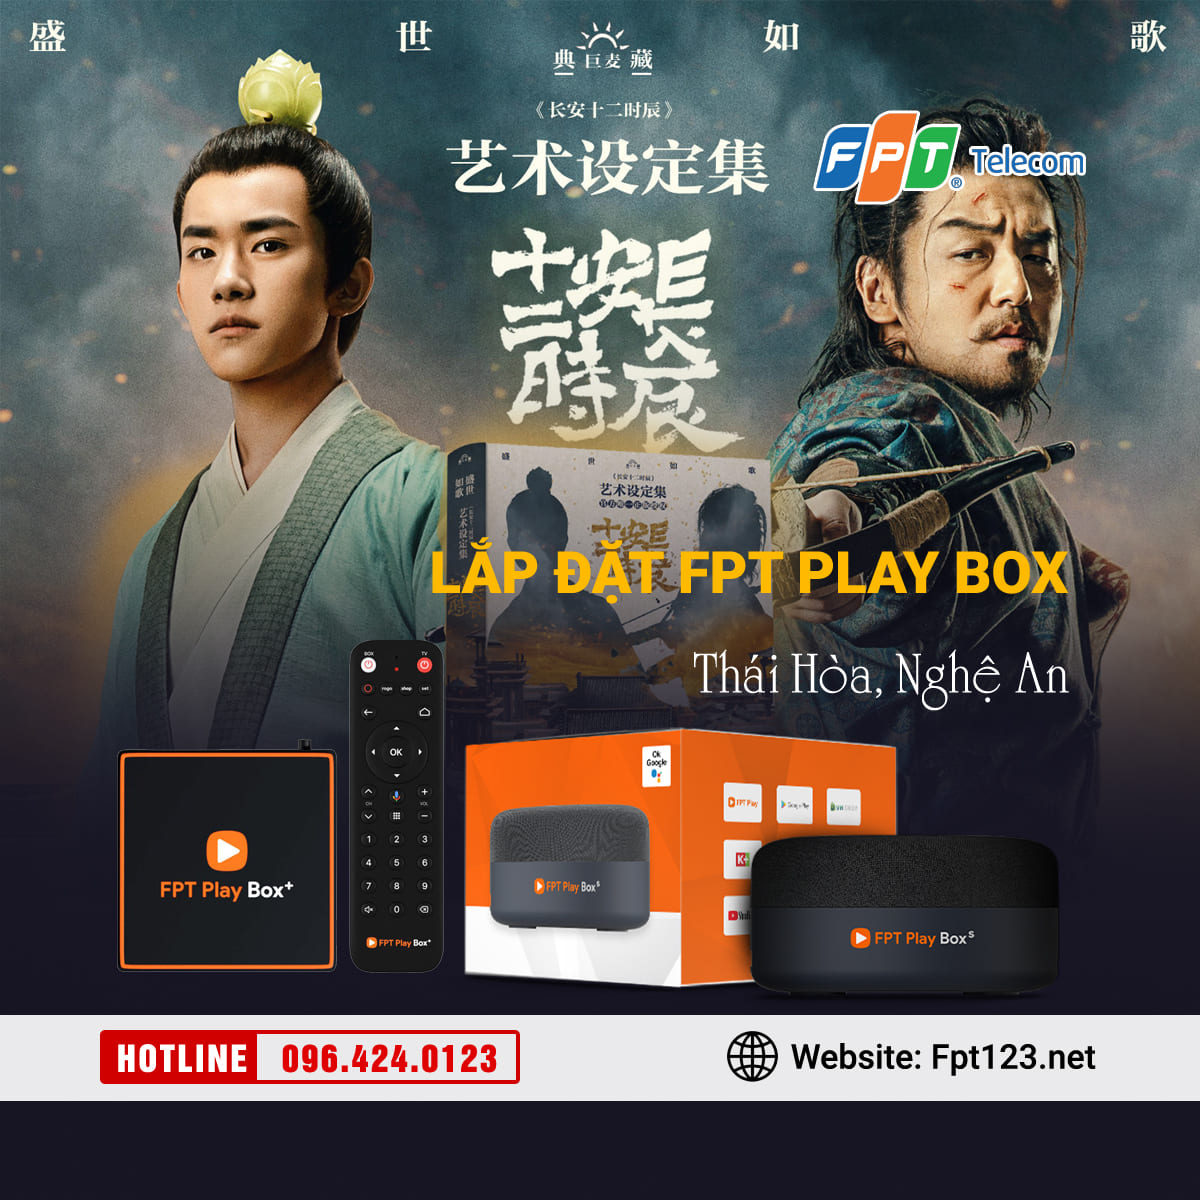 Lắp đặt FPT Play Box chính hãng tại Thái Hòa, Nghệ An